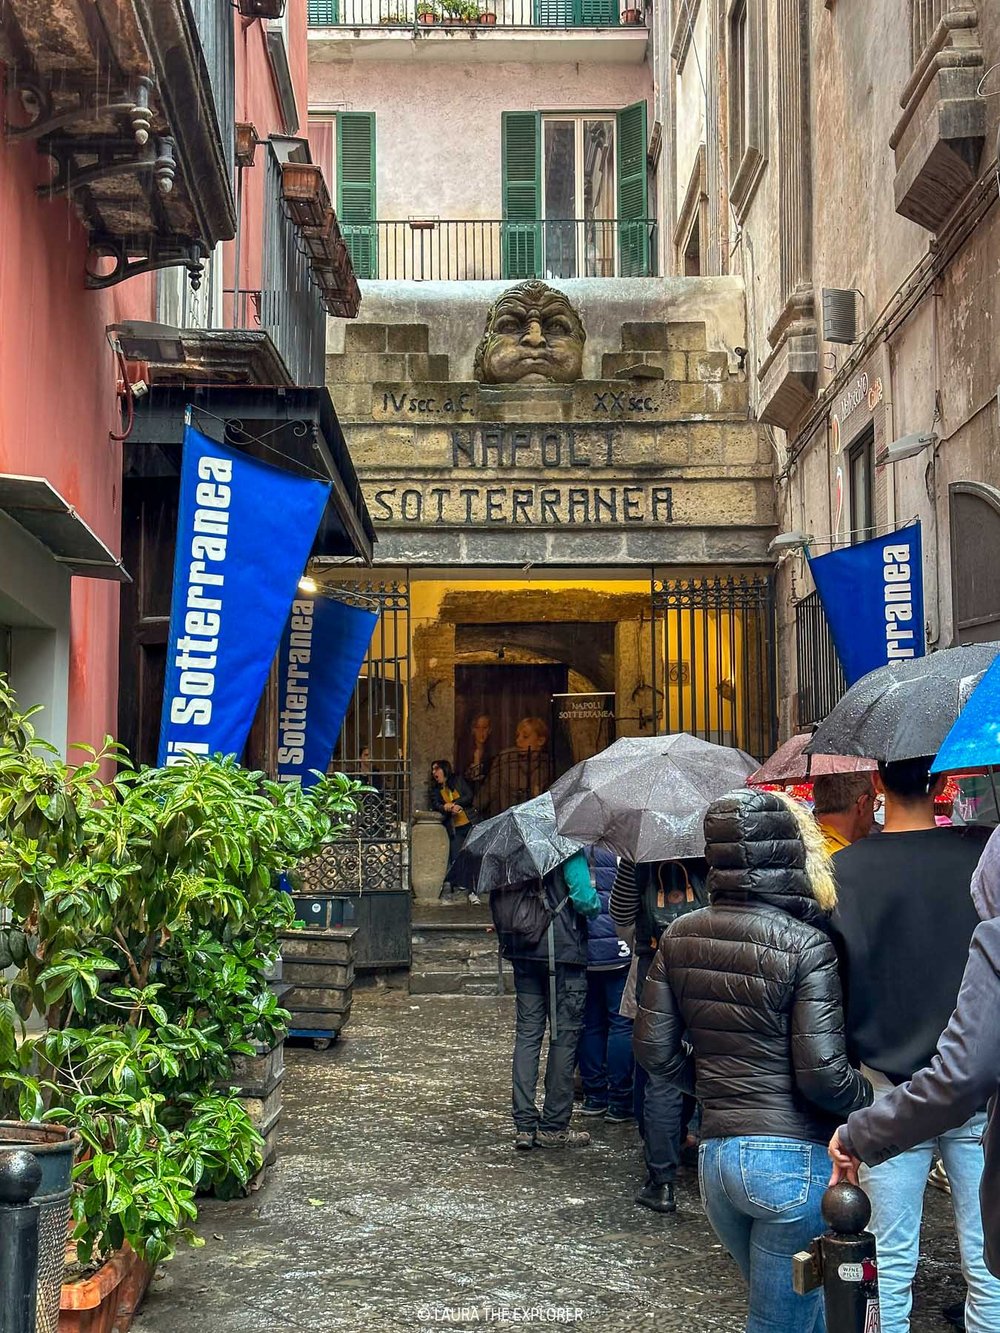 the entry to napoli sotterranea